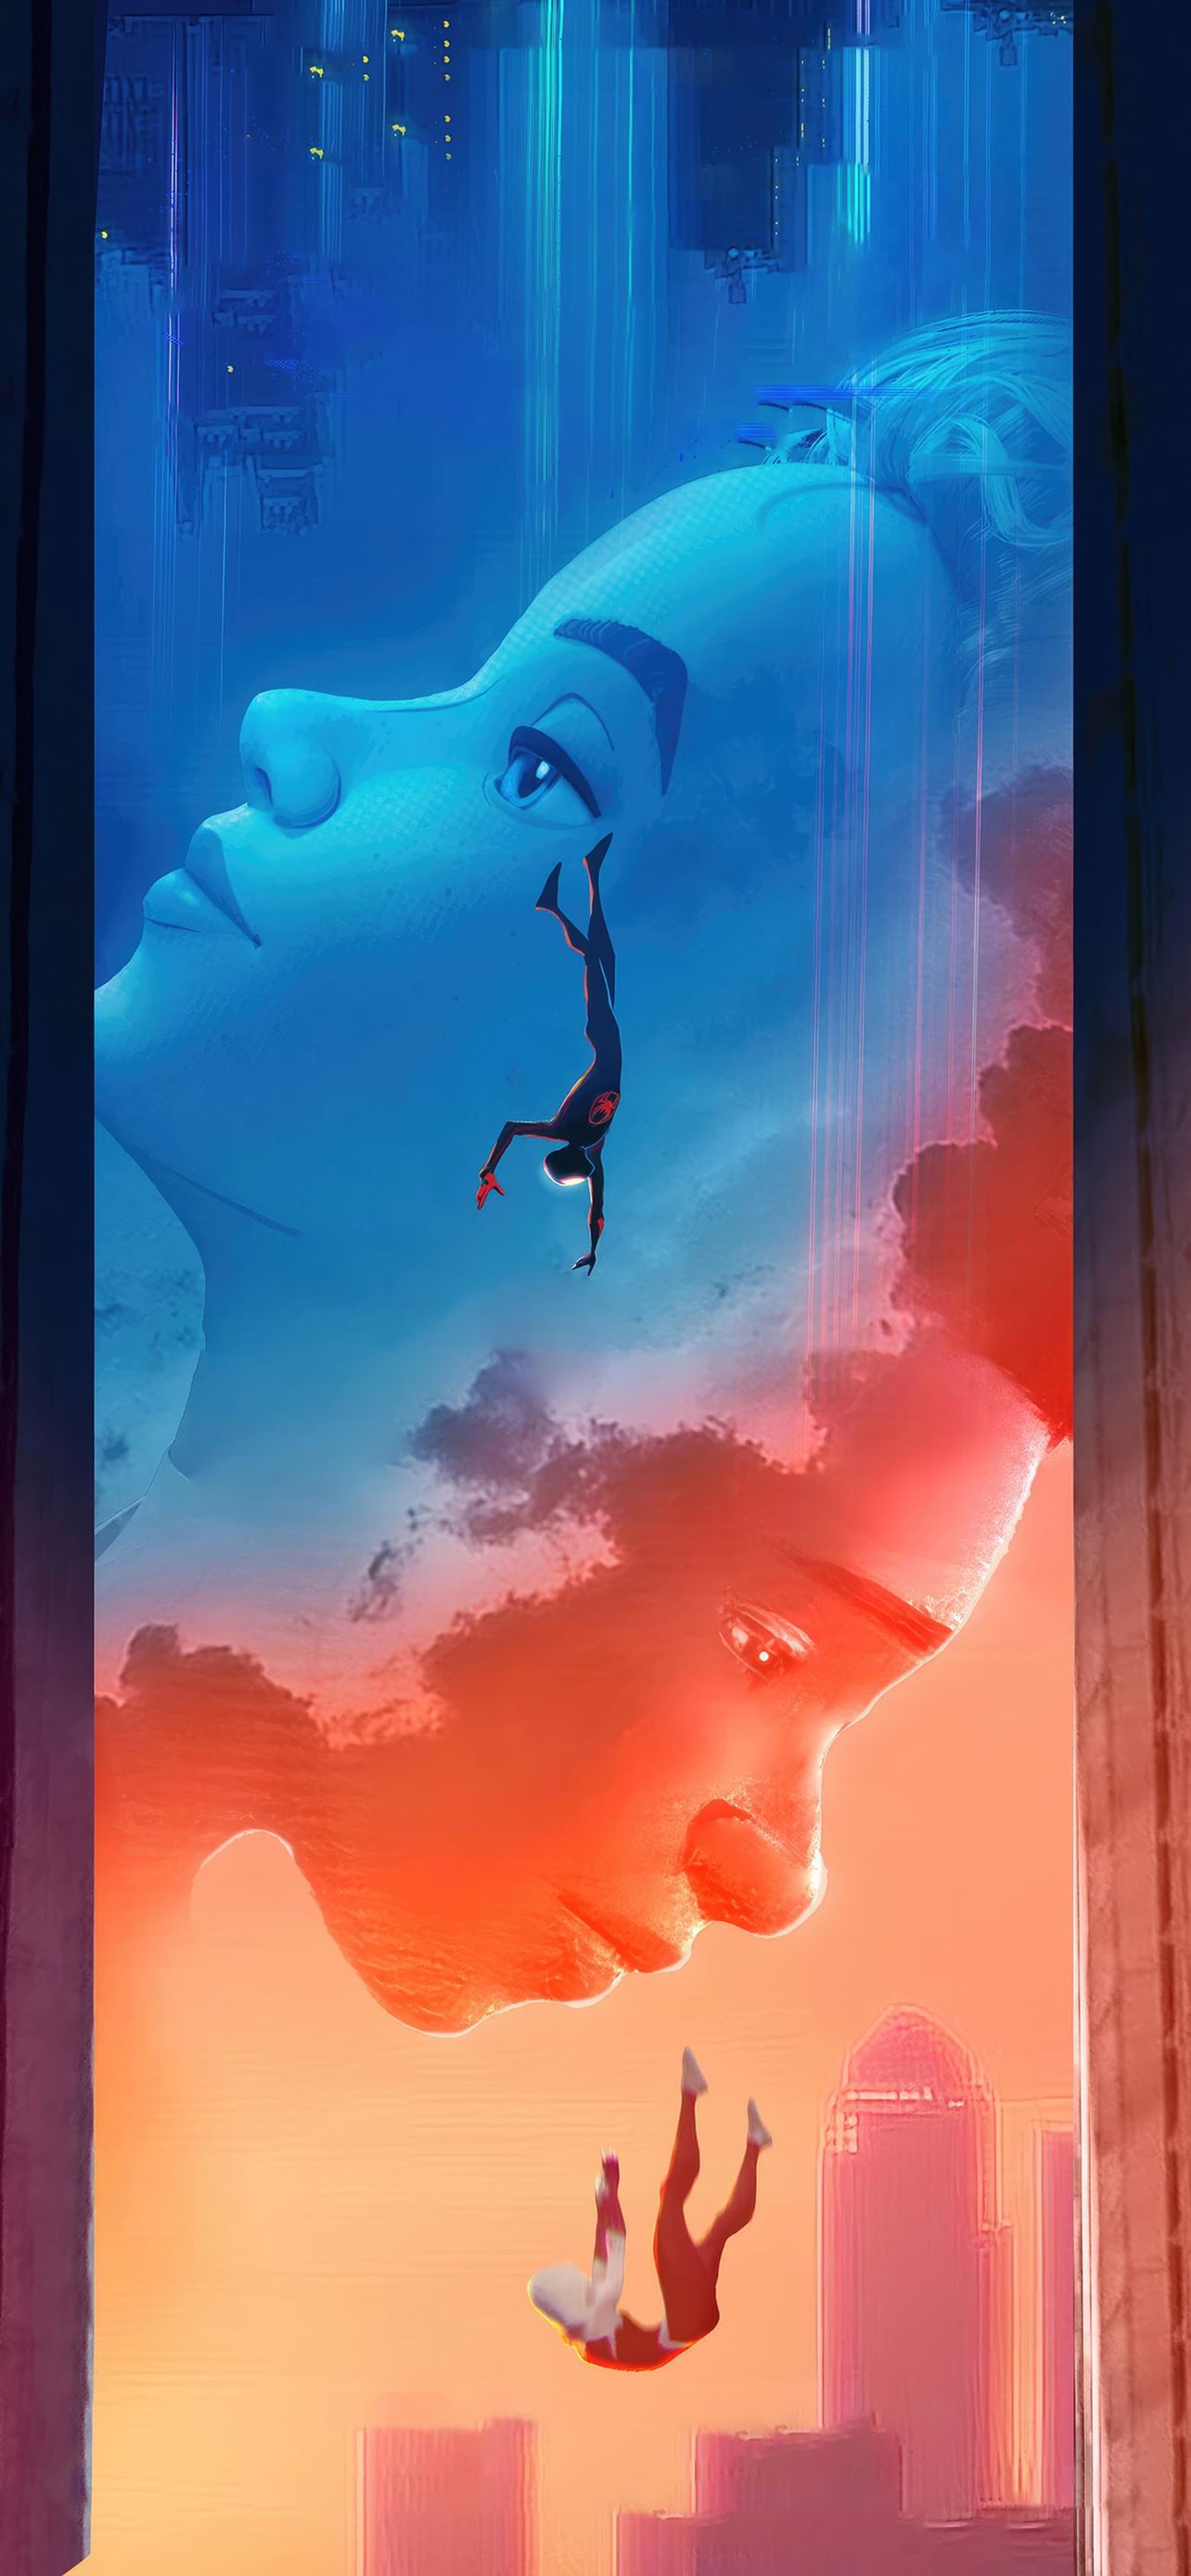 Spiderman Miles Morales falling between buildings Wallpaper 4k Ultra HD  ID5994